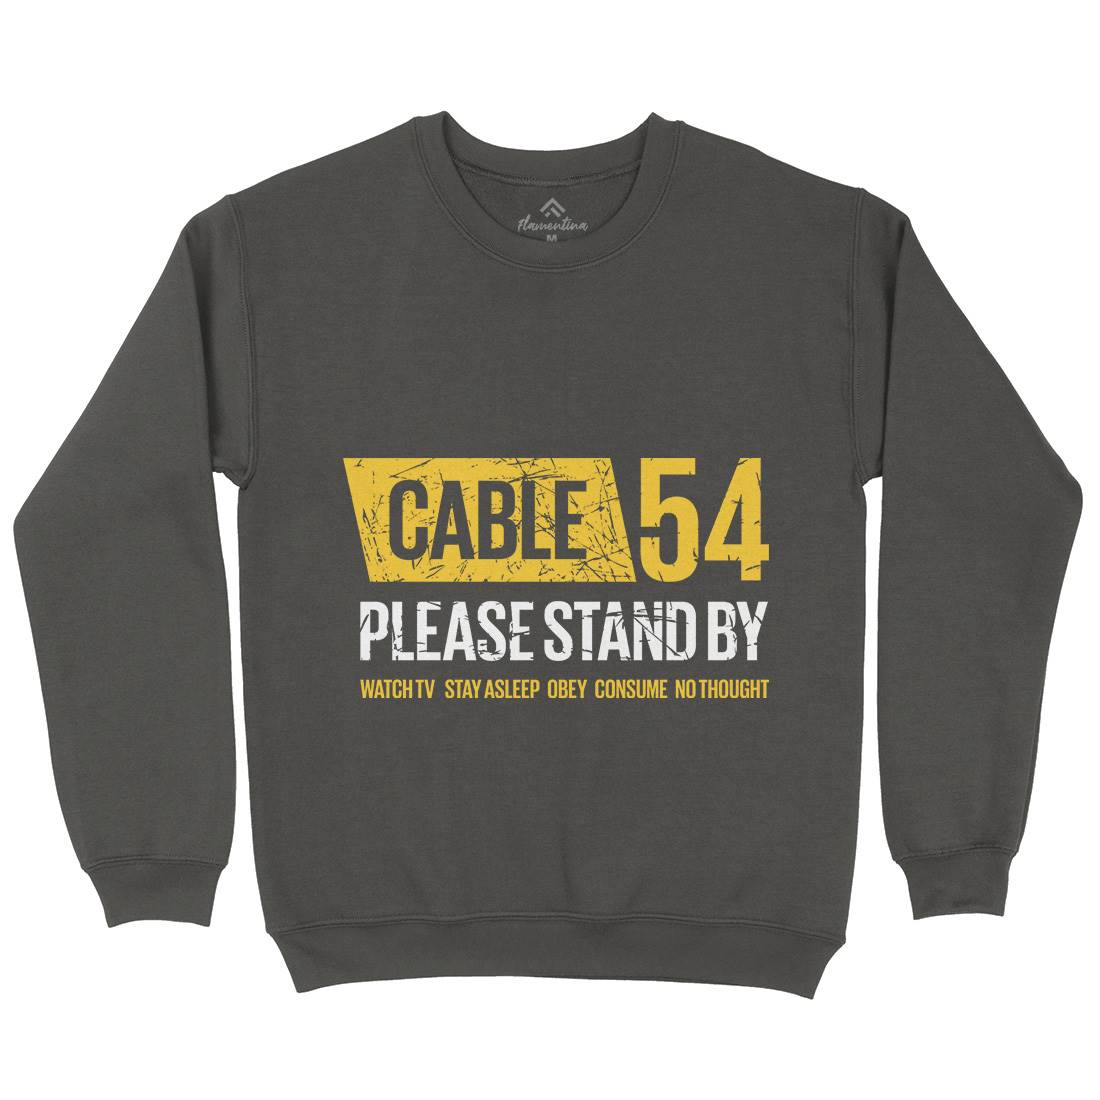 Cable 54 Kids Crew Neck Sweatshirt Horror D344